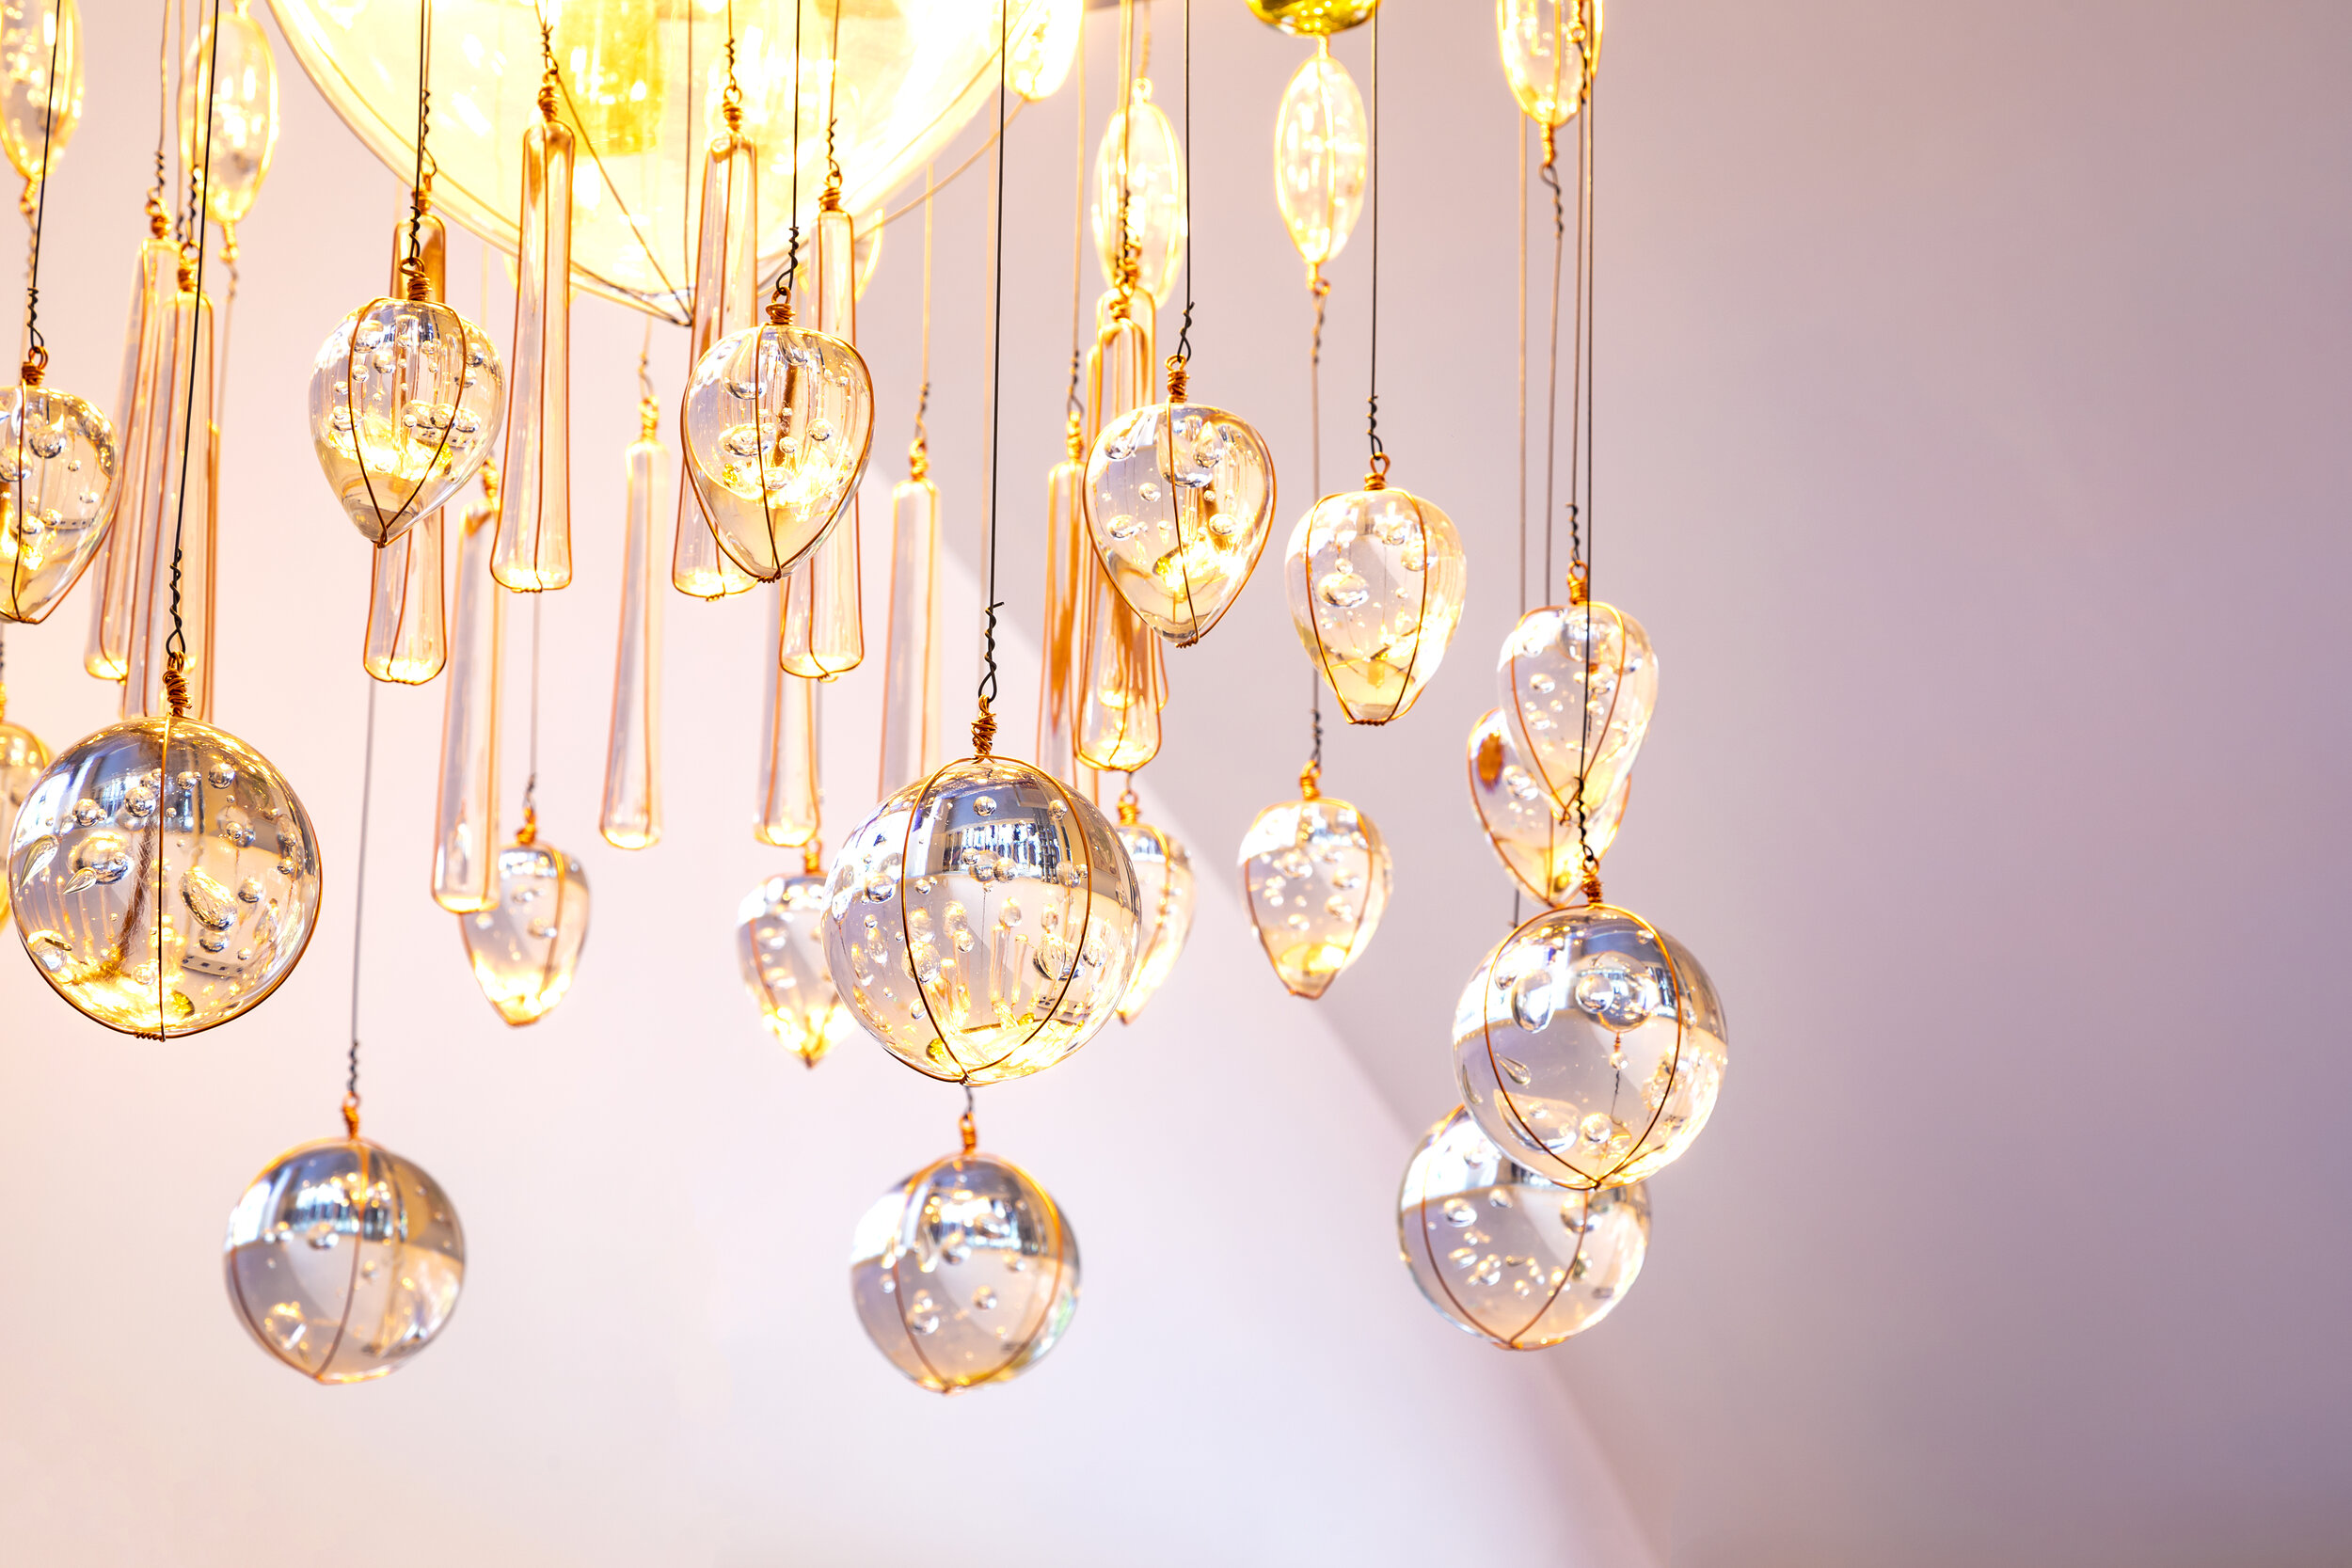 Salon de Luxe Chandelier Spheres Rachel Keenan Photography.jpg